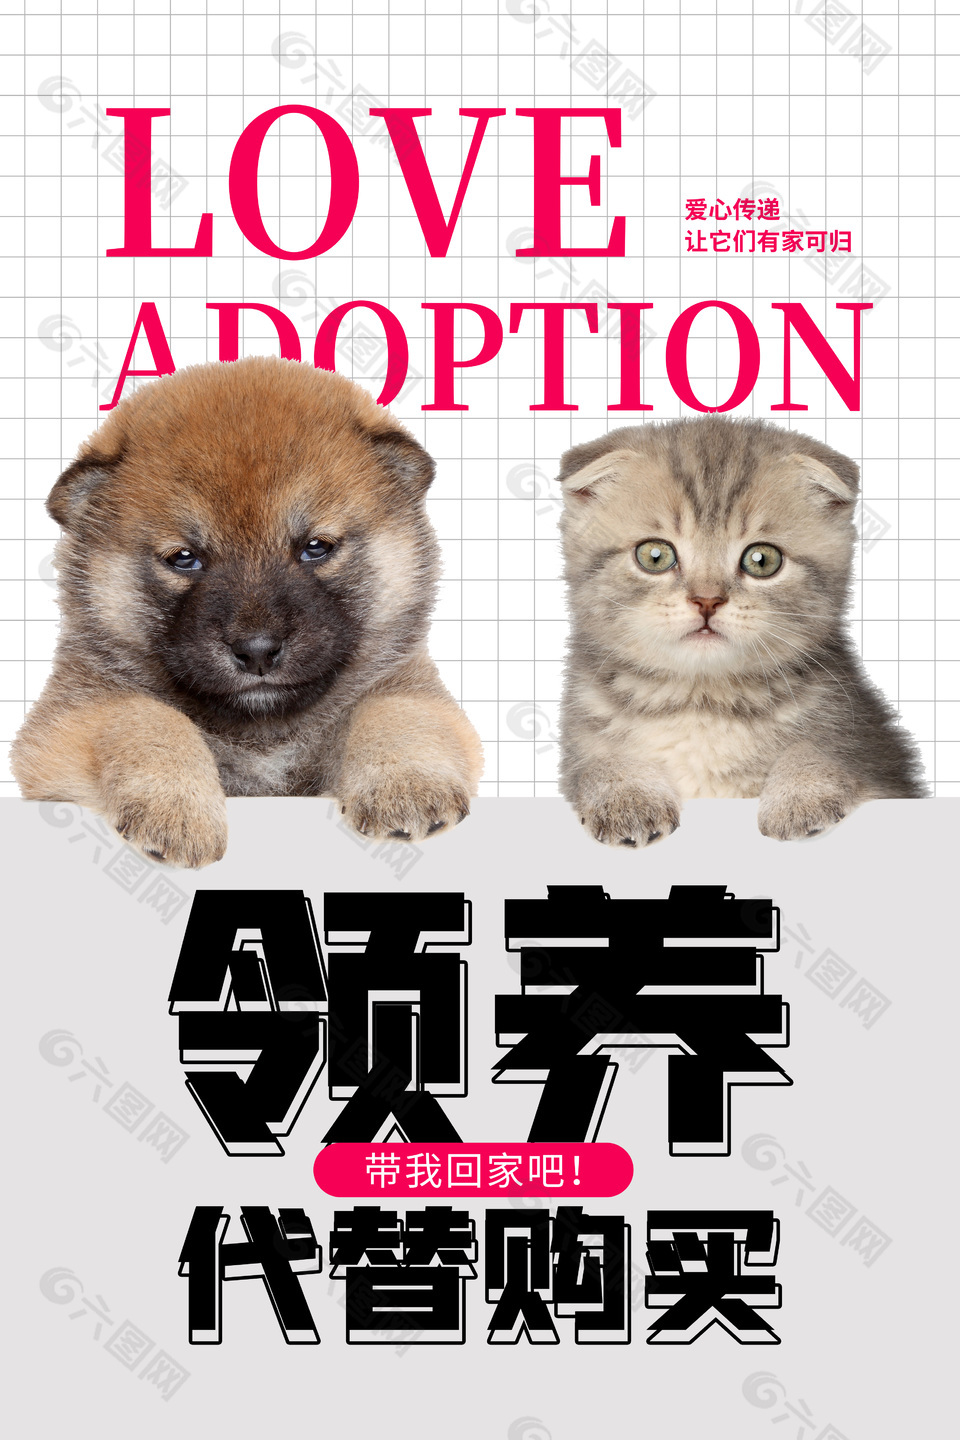 宠物领养爱心传递萌宠宣传海报设计